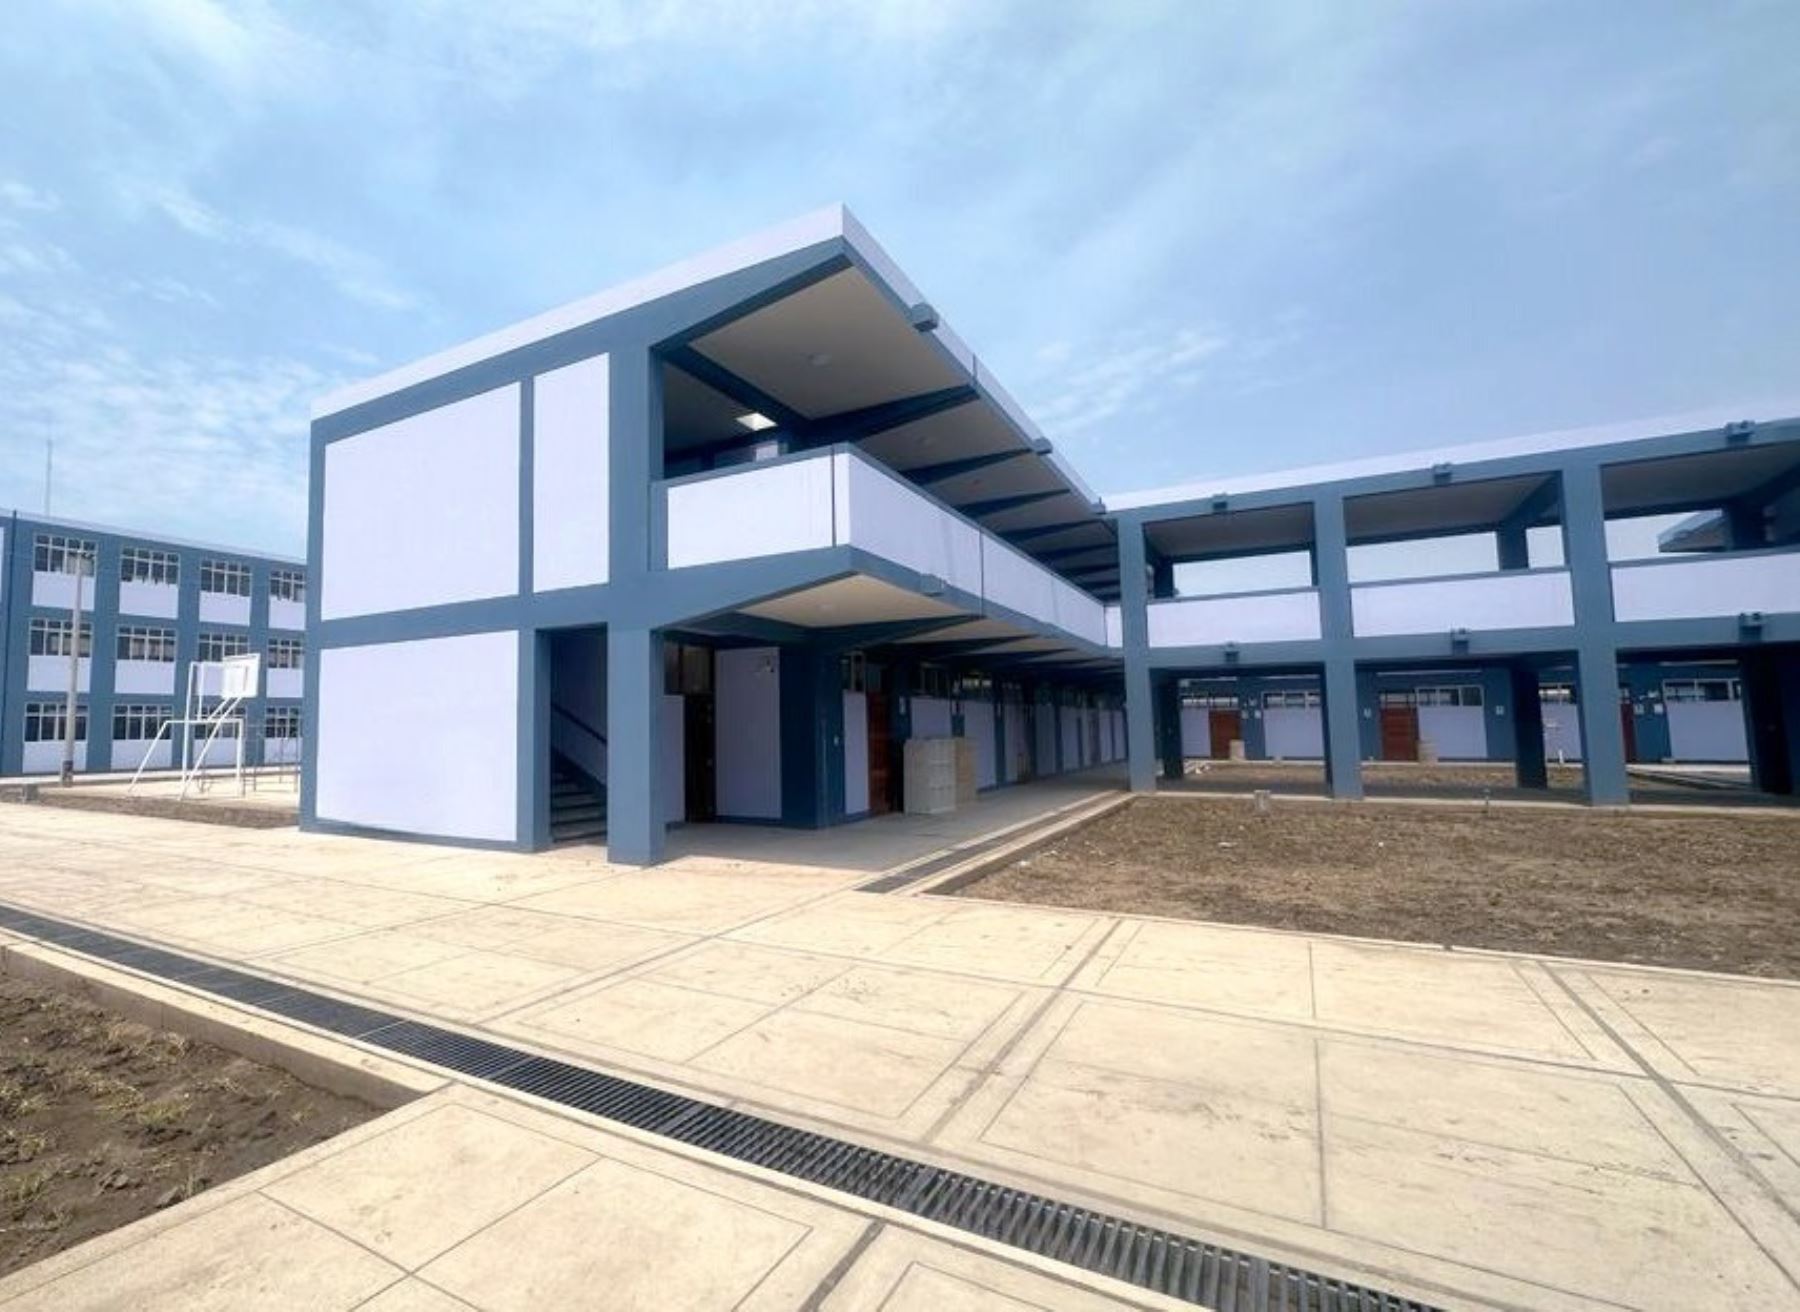 Más de 1,500 escolares se beneficiarán con la nueva sede del colegio Cristo Rey, ubicado en el distrito de José Leonardo Ortiz, en Lambayeque. La obra fue financiada por la Autoridad para la Reconstrucción con Cambios. ANDINA/Difusión